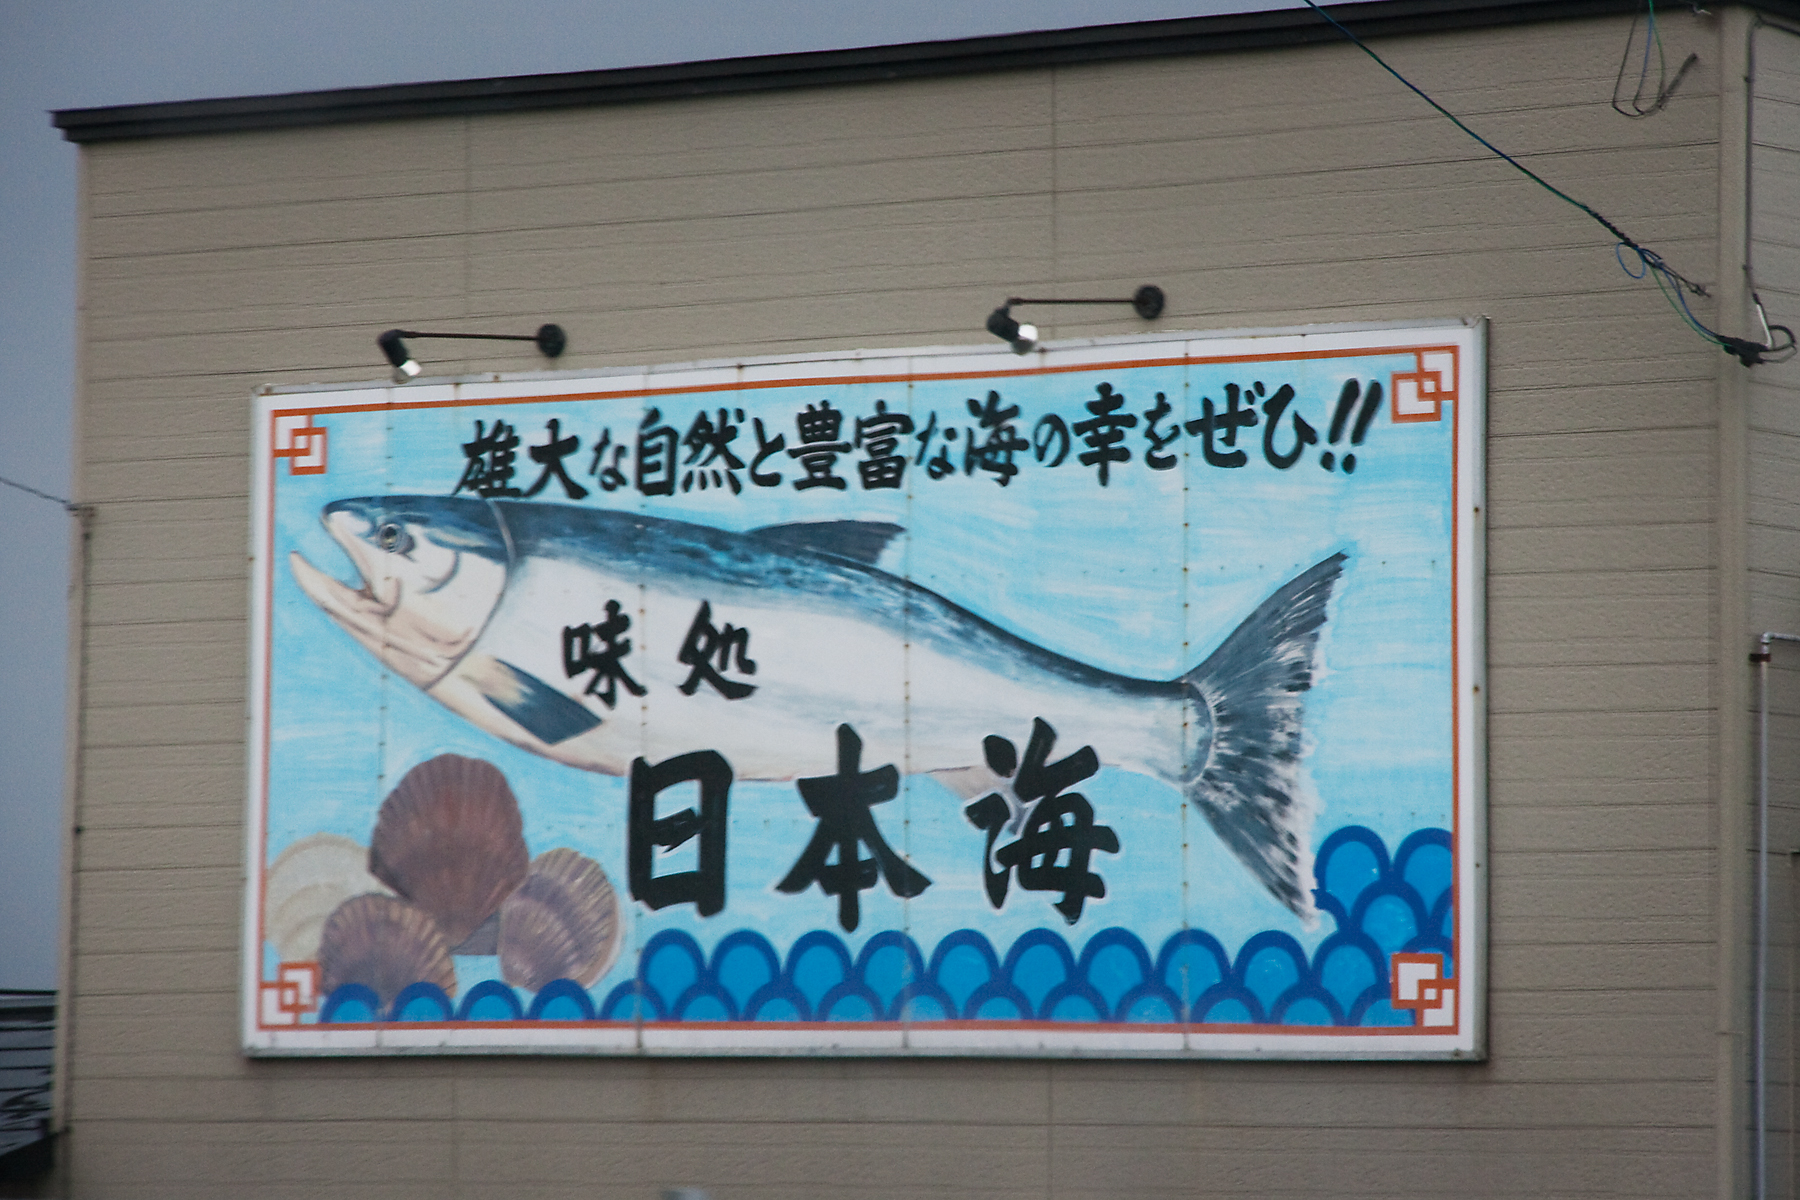 Vrldens bsta Sushi finns sjlvklart i Japan.     Foto: Andreas Bengtsson